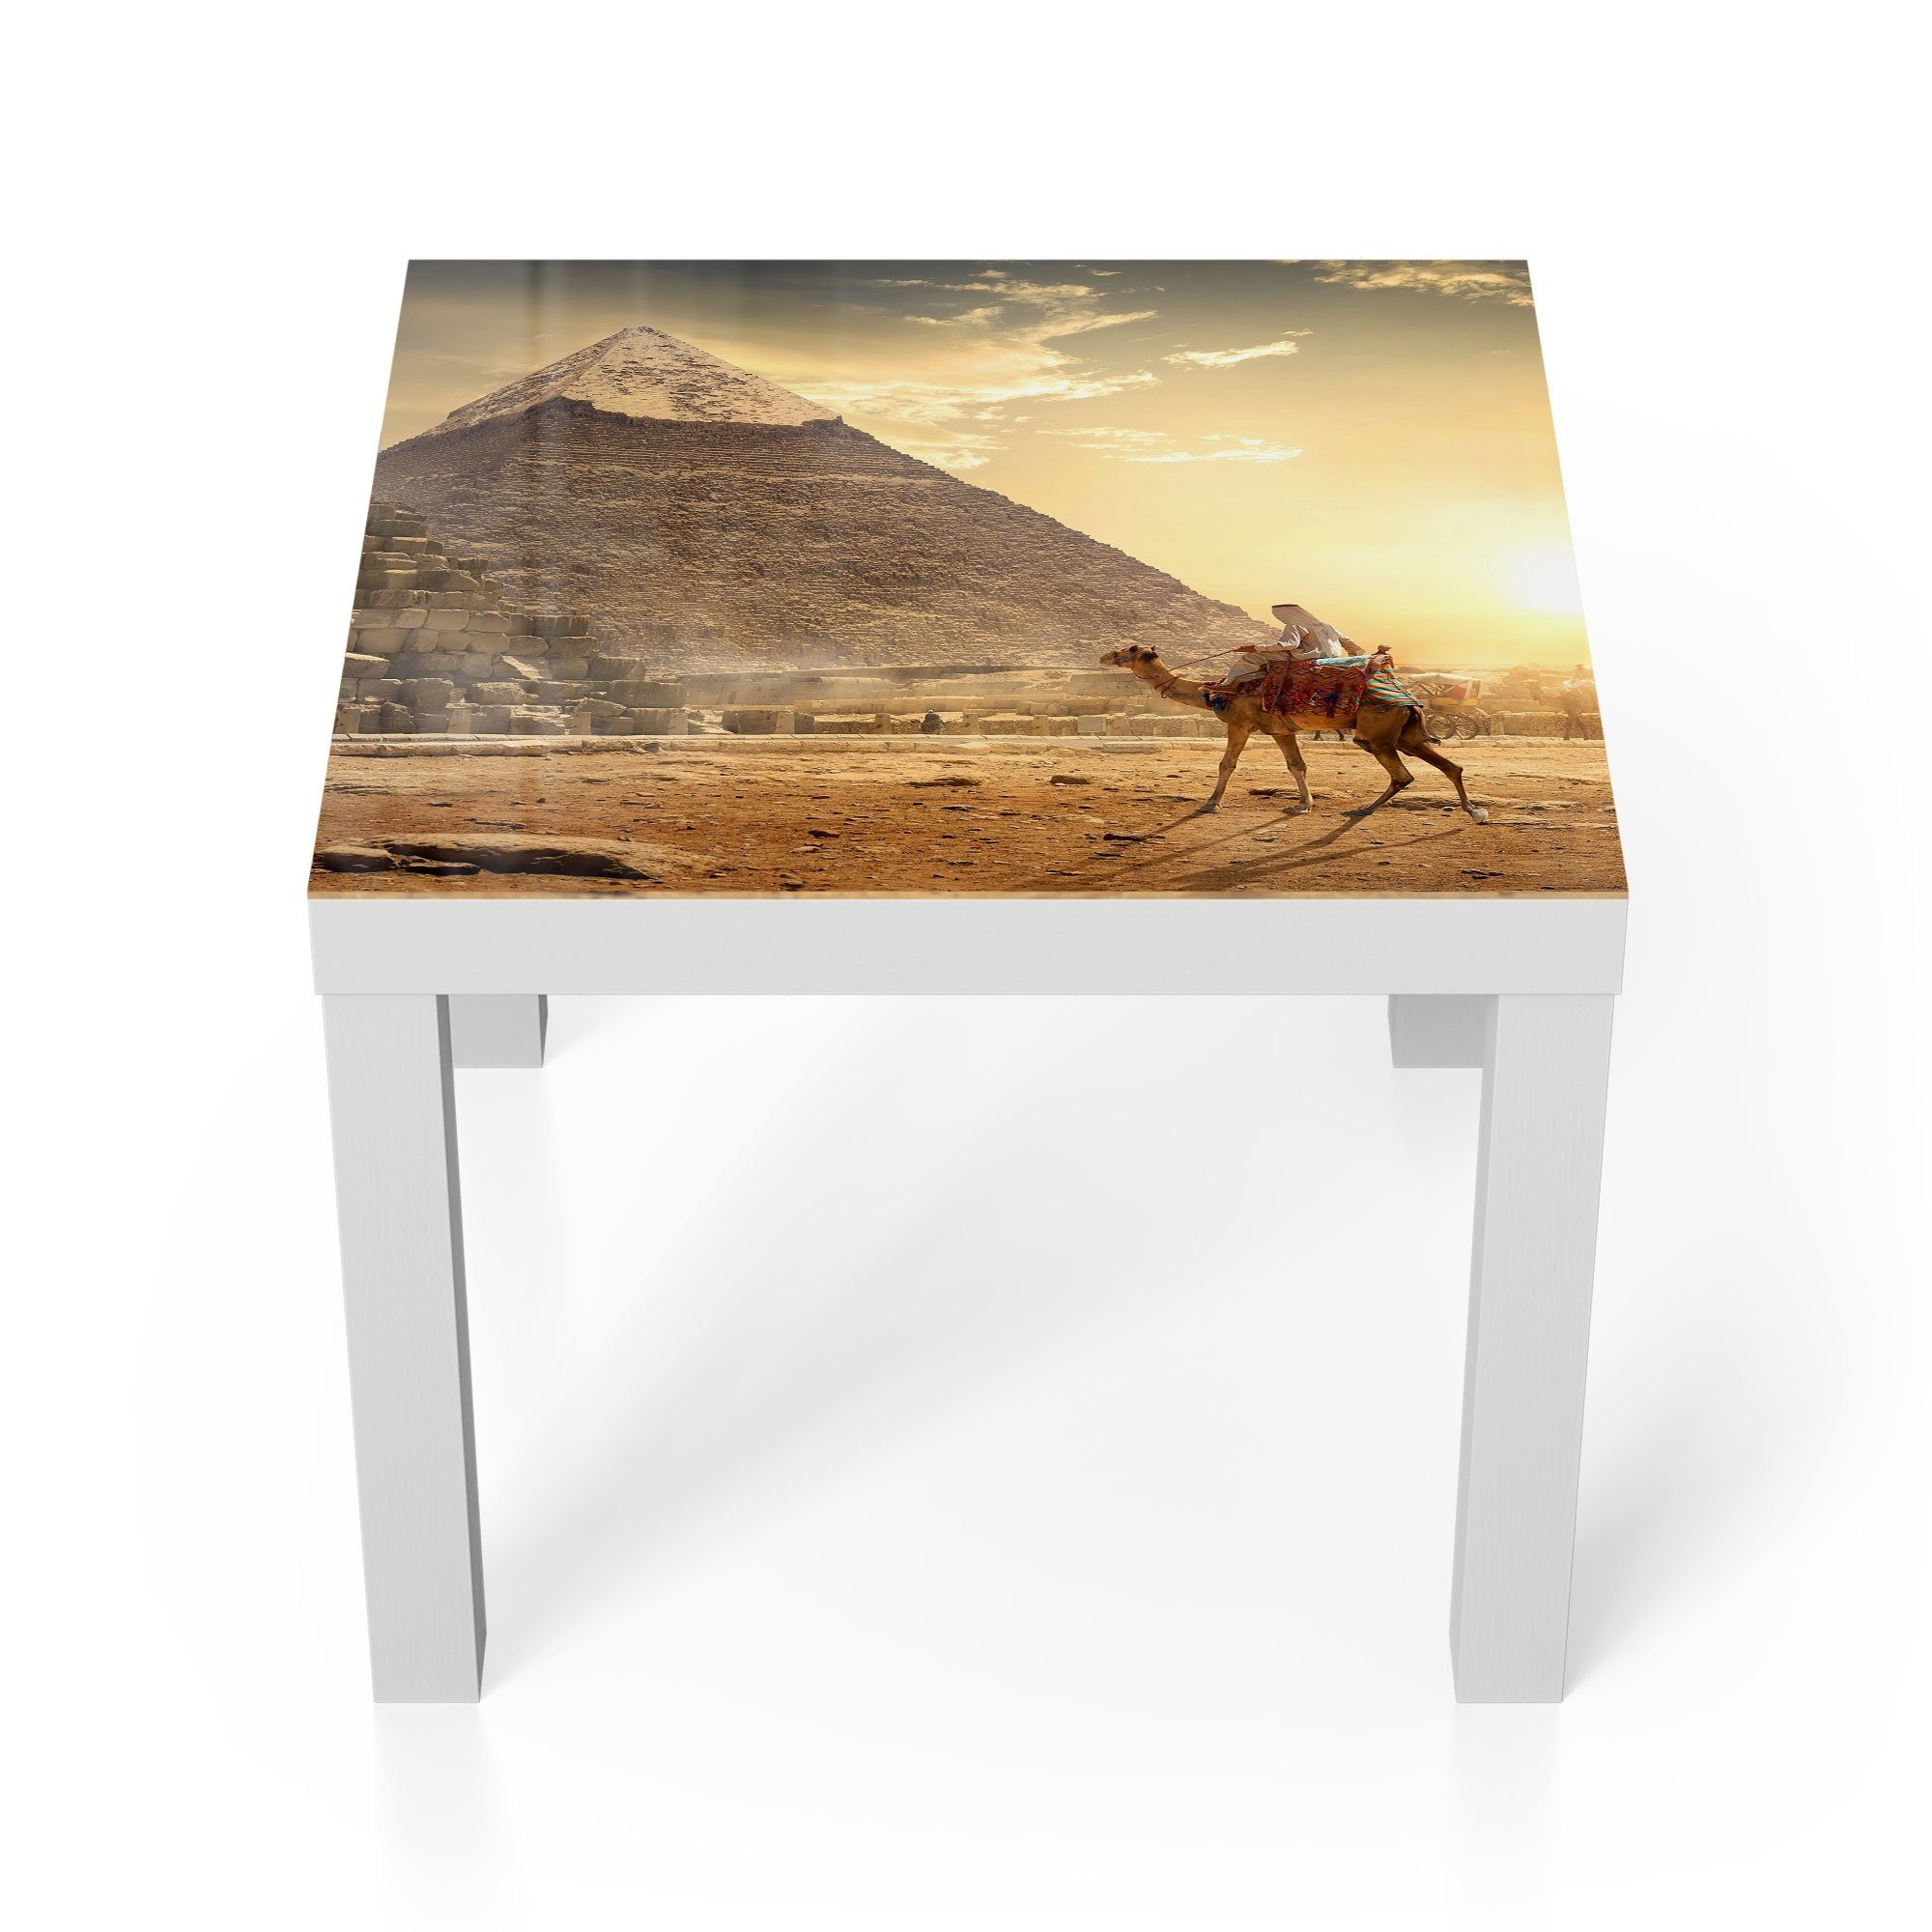 DEQORI Couchtisch 'Kamelritt in der Wüste', Glas Beistelltisch Glastisch modern Weiß